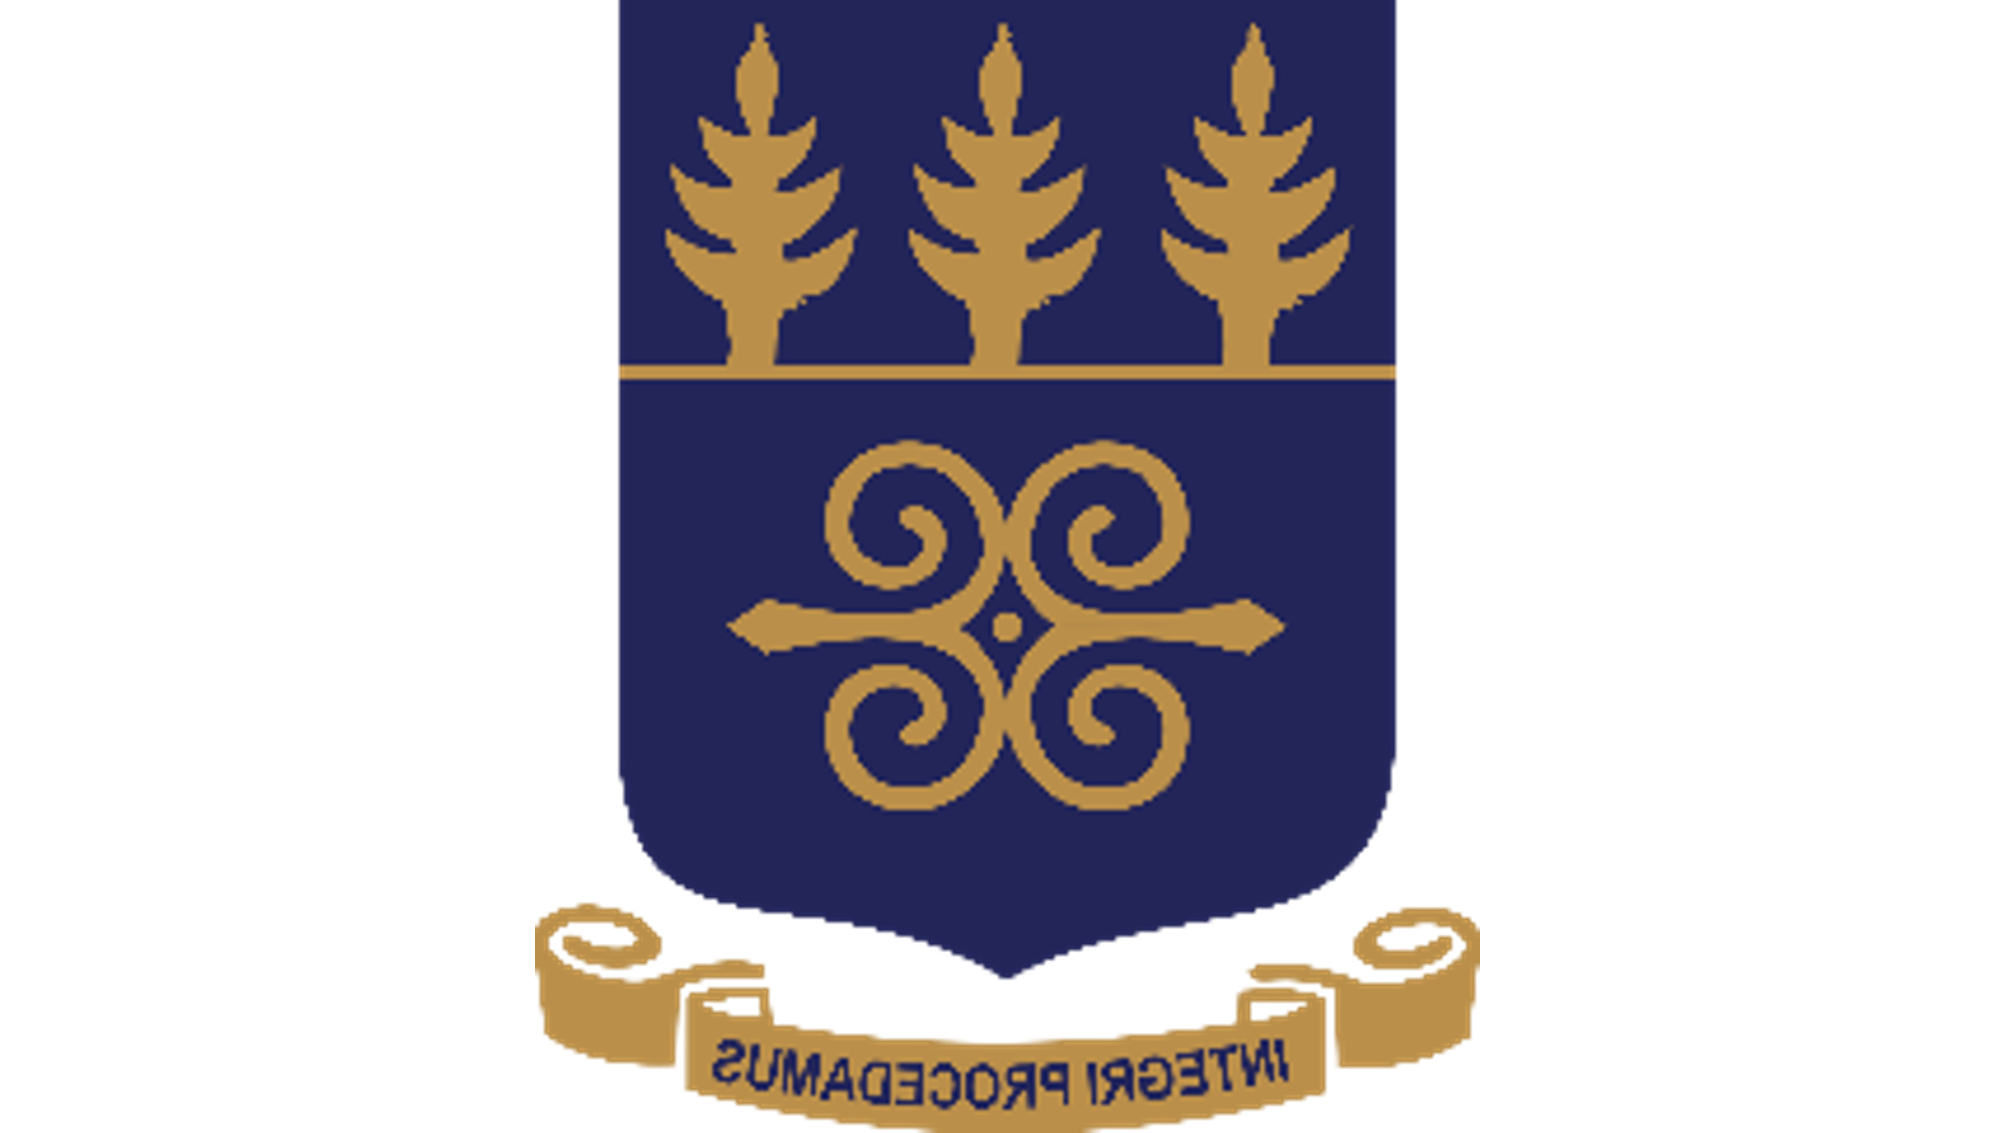 Logo of the University of Ghana